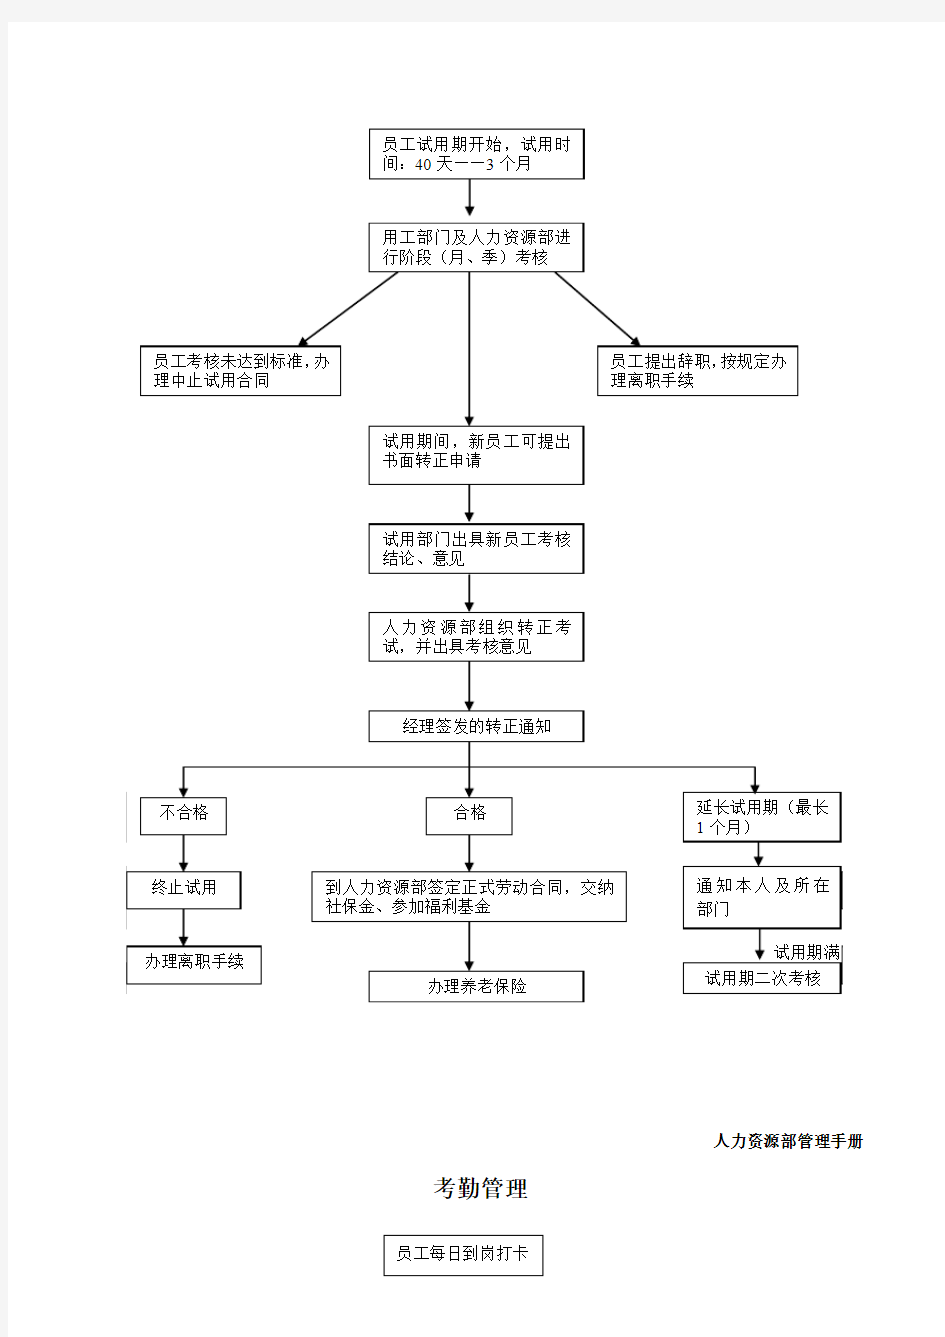 人力资源部管理手册流程图111